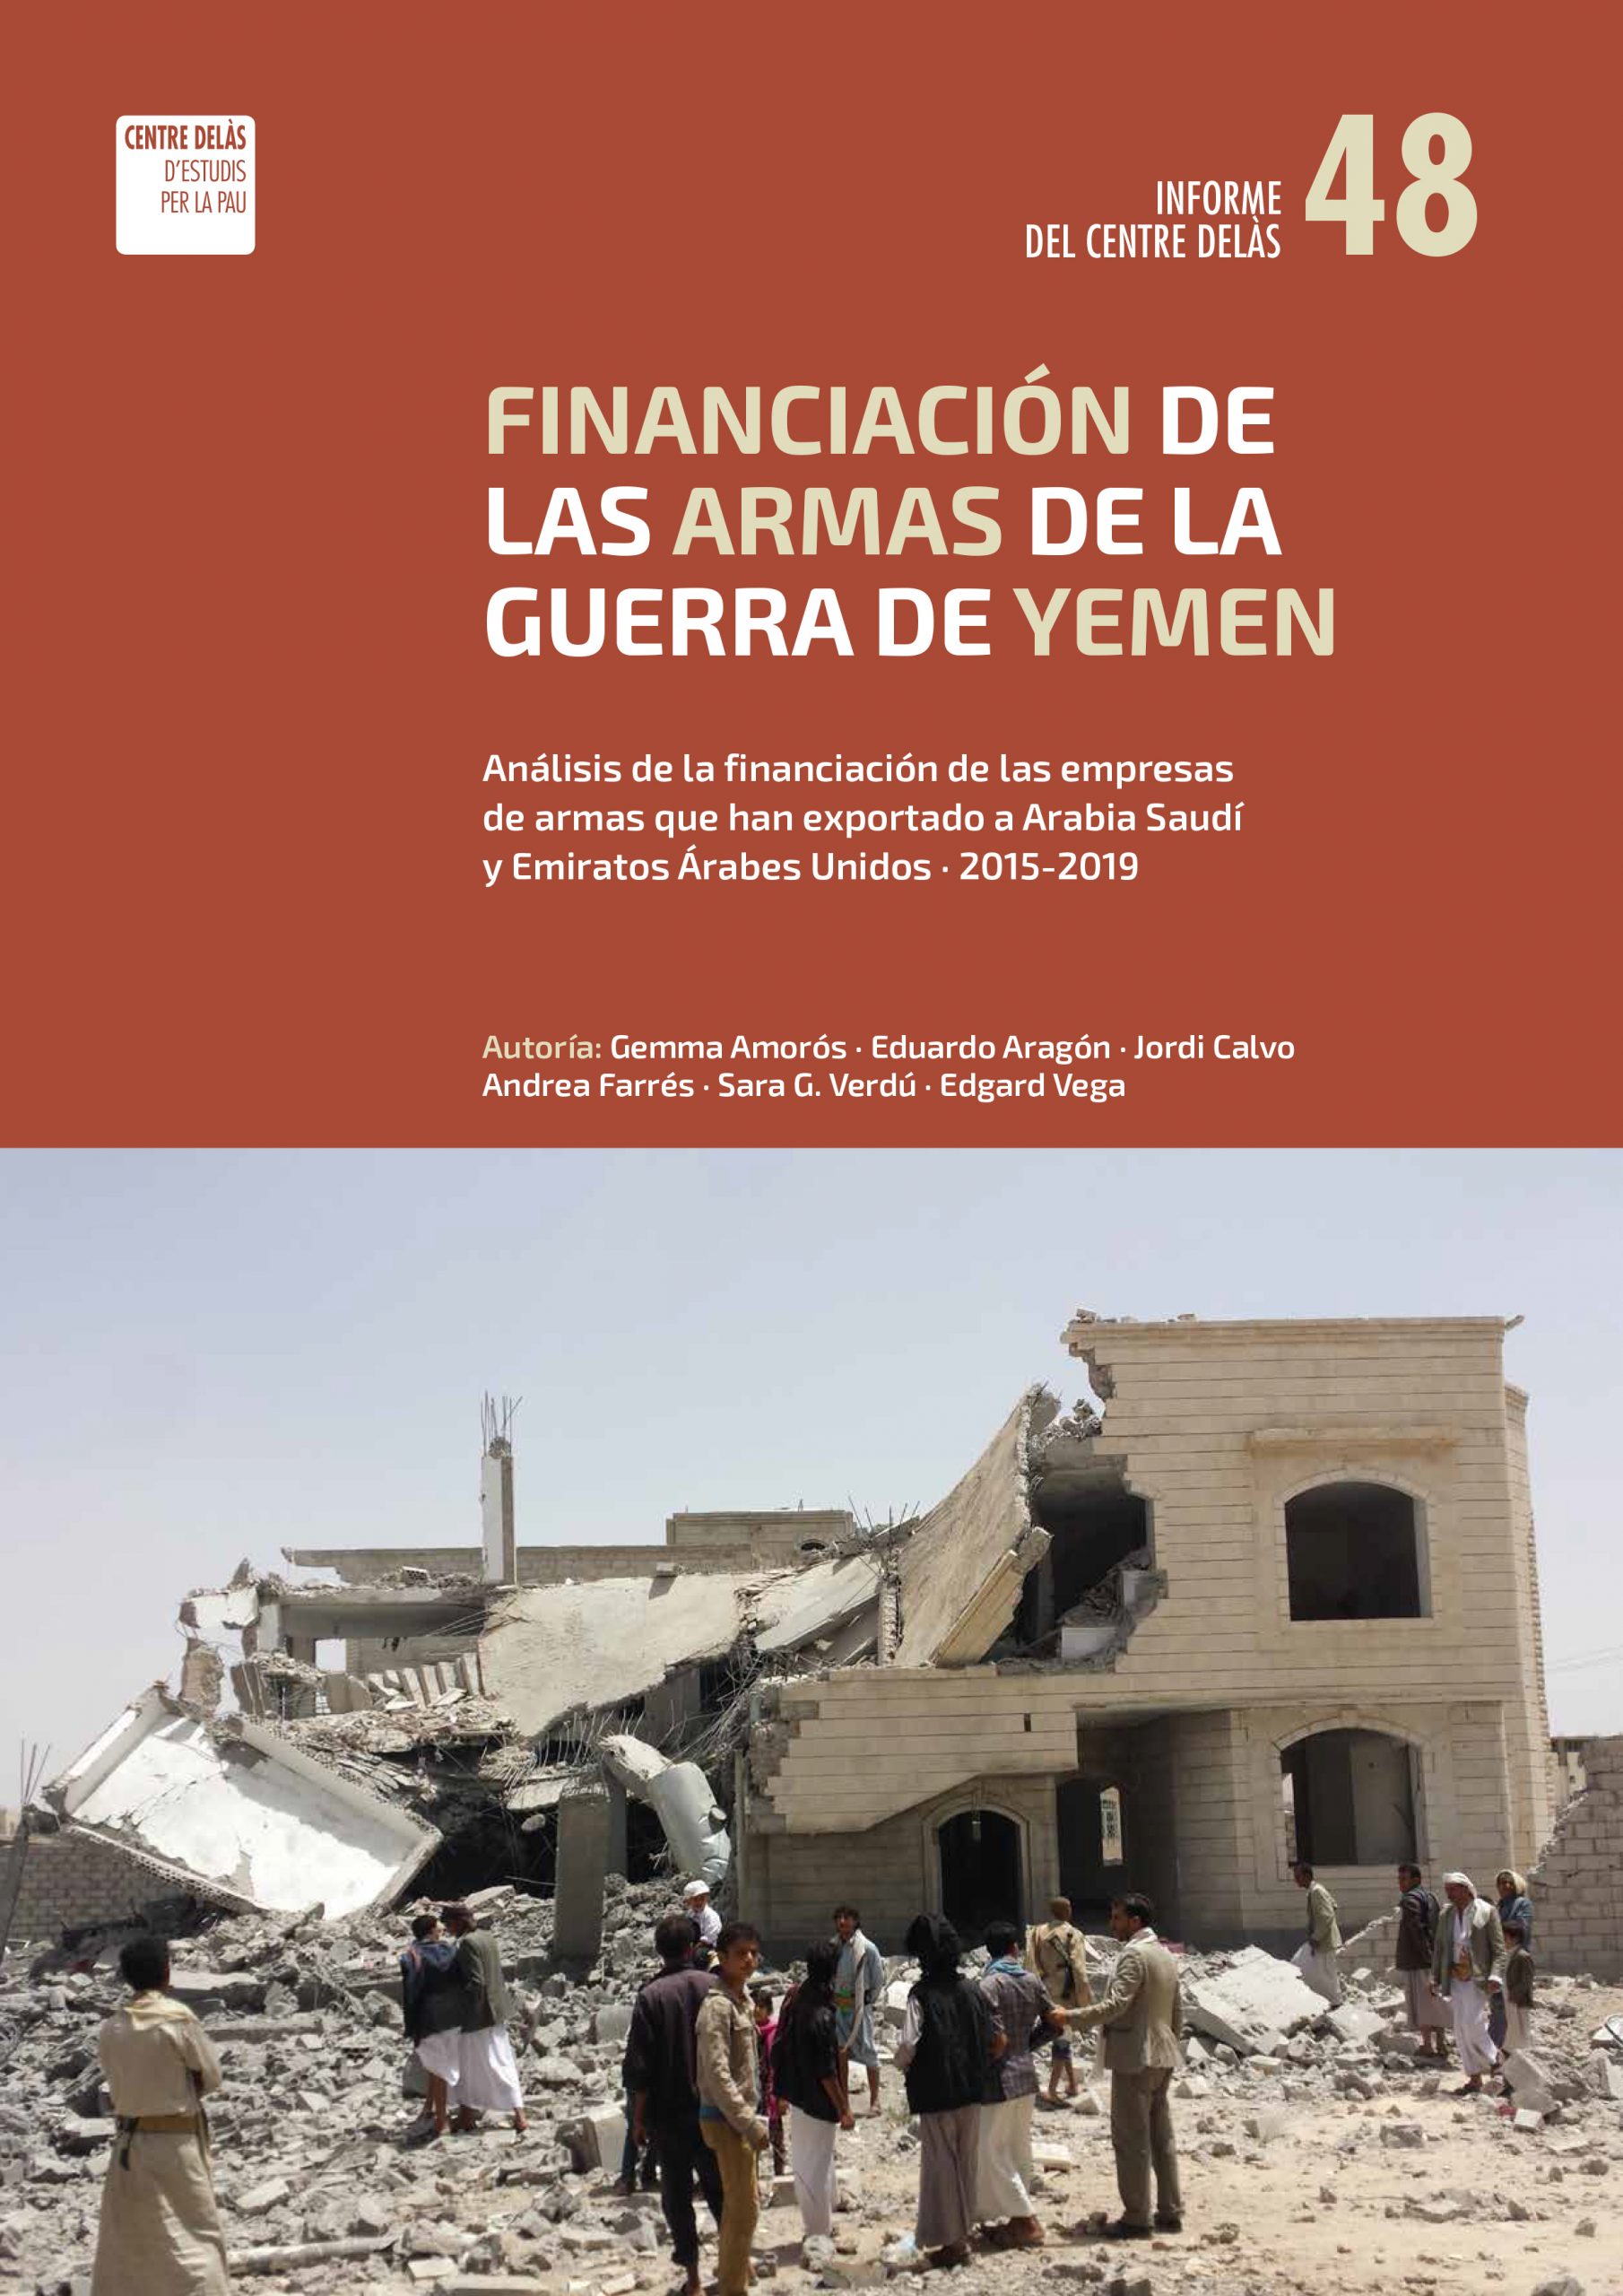 Informe 48: Financiación de las armas de la guerra de Yemen. Análisis de la financiación de las empresas de armas que han exportado a Arabia Saudí y Emiratos Árabes Unidos (2015-2019)